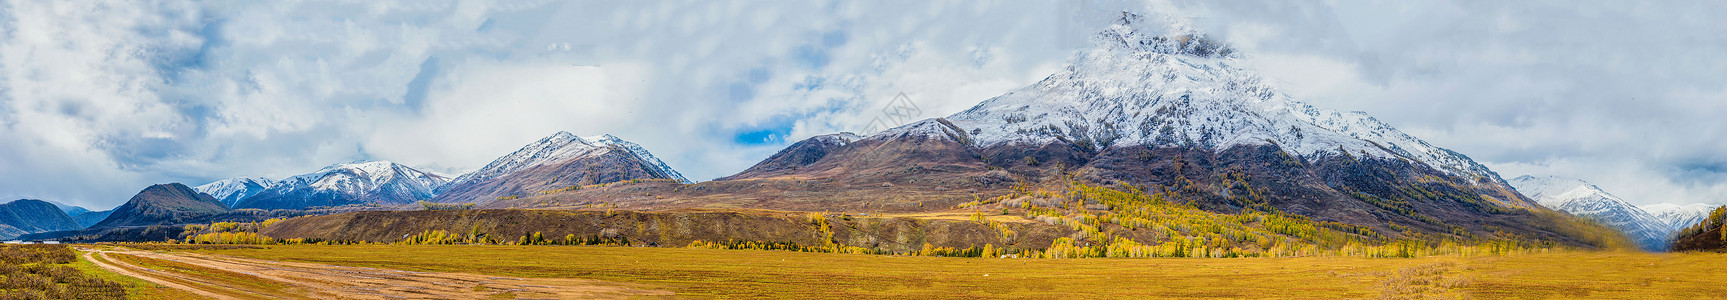 雪盔北疆秋色雪山全景背景